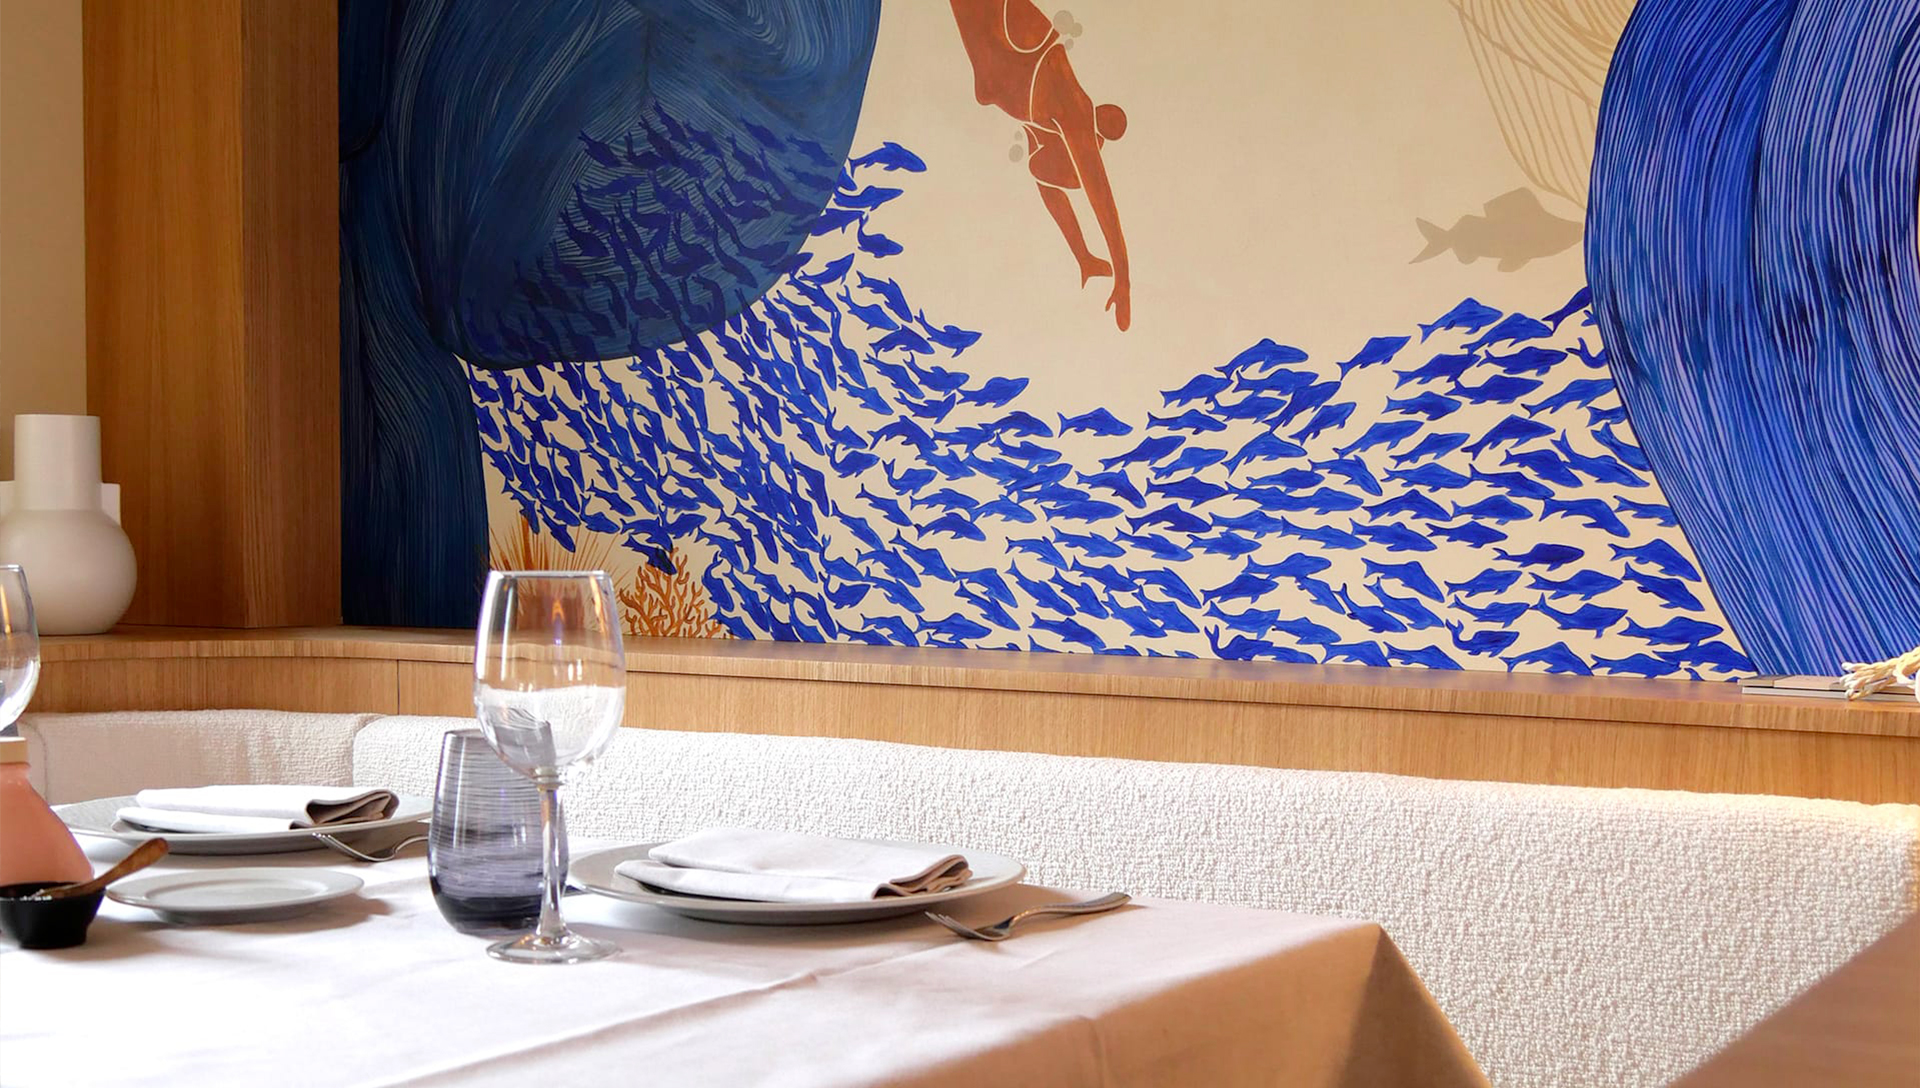 Découvrez le restaurant gastronomique Le Boccaccio sur la Rue Masséna à Nice.